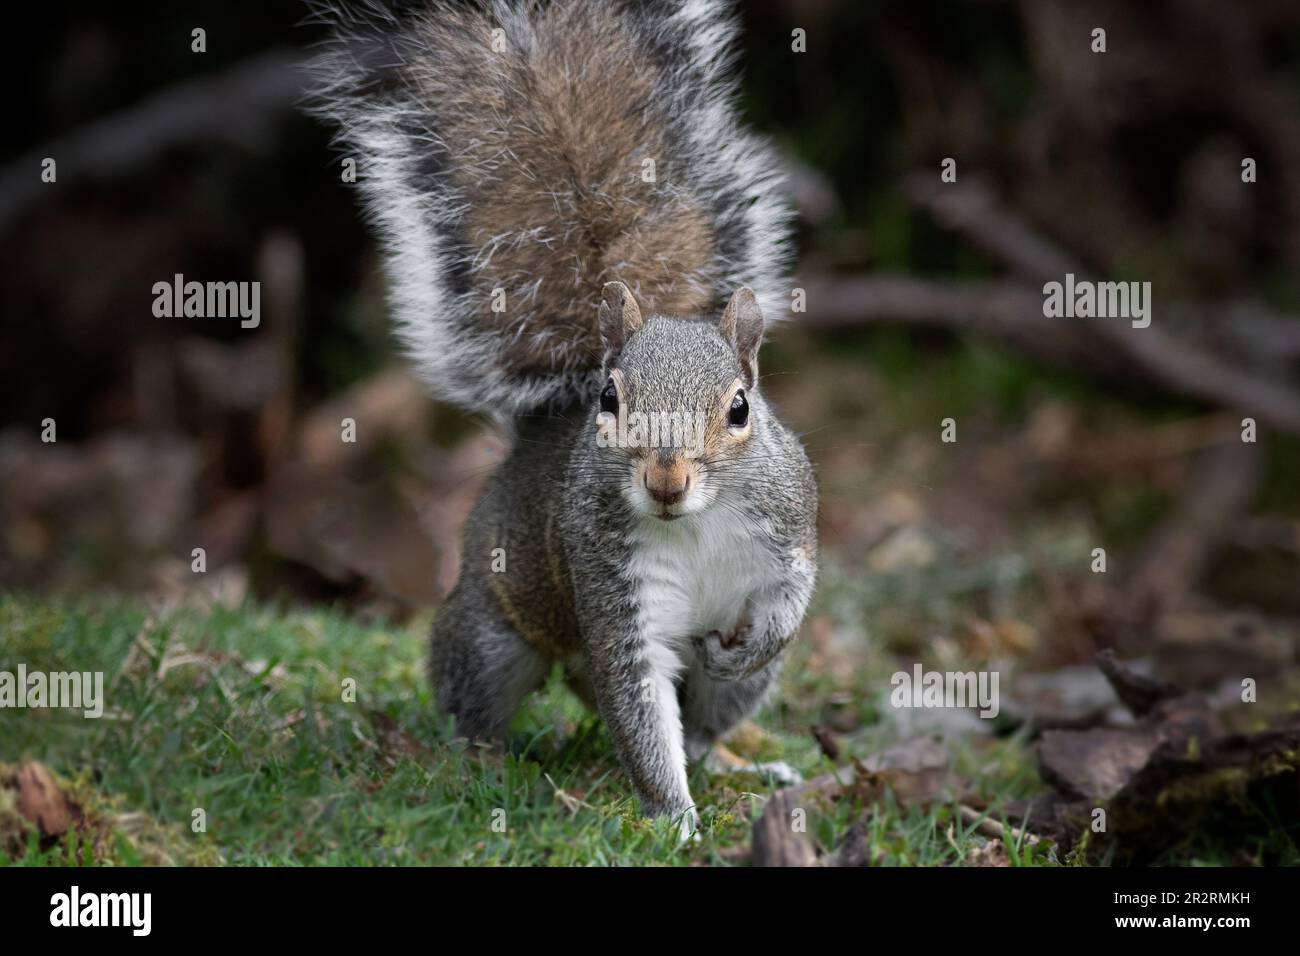 Nahaufnahme eines grauen Eichhörnchens mit einem erhobenen vorderen Bein und direktem Blick auf die Kamera Stockfoto